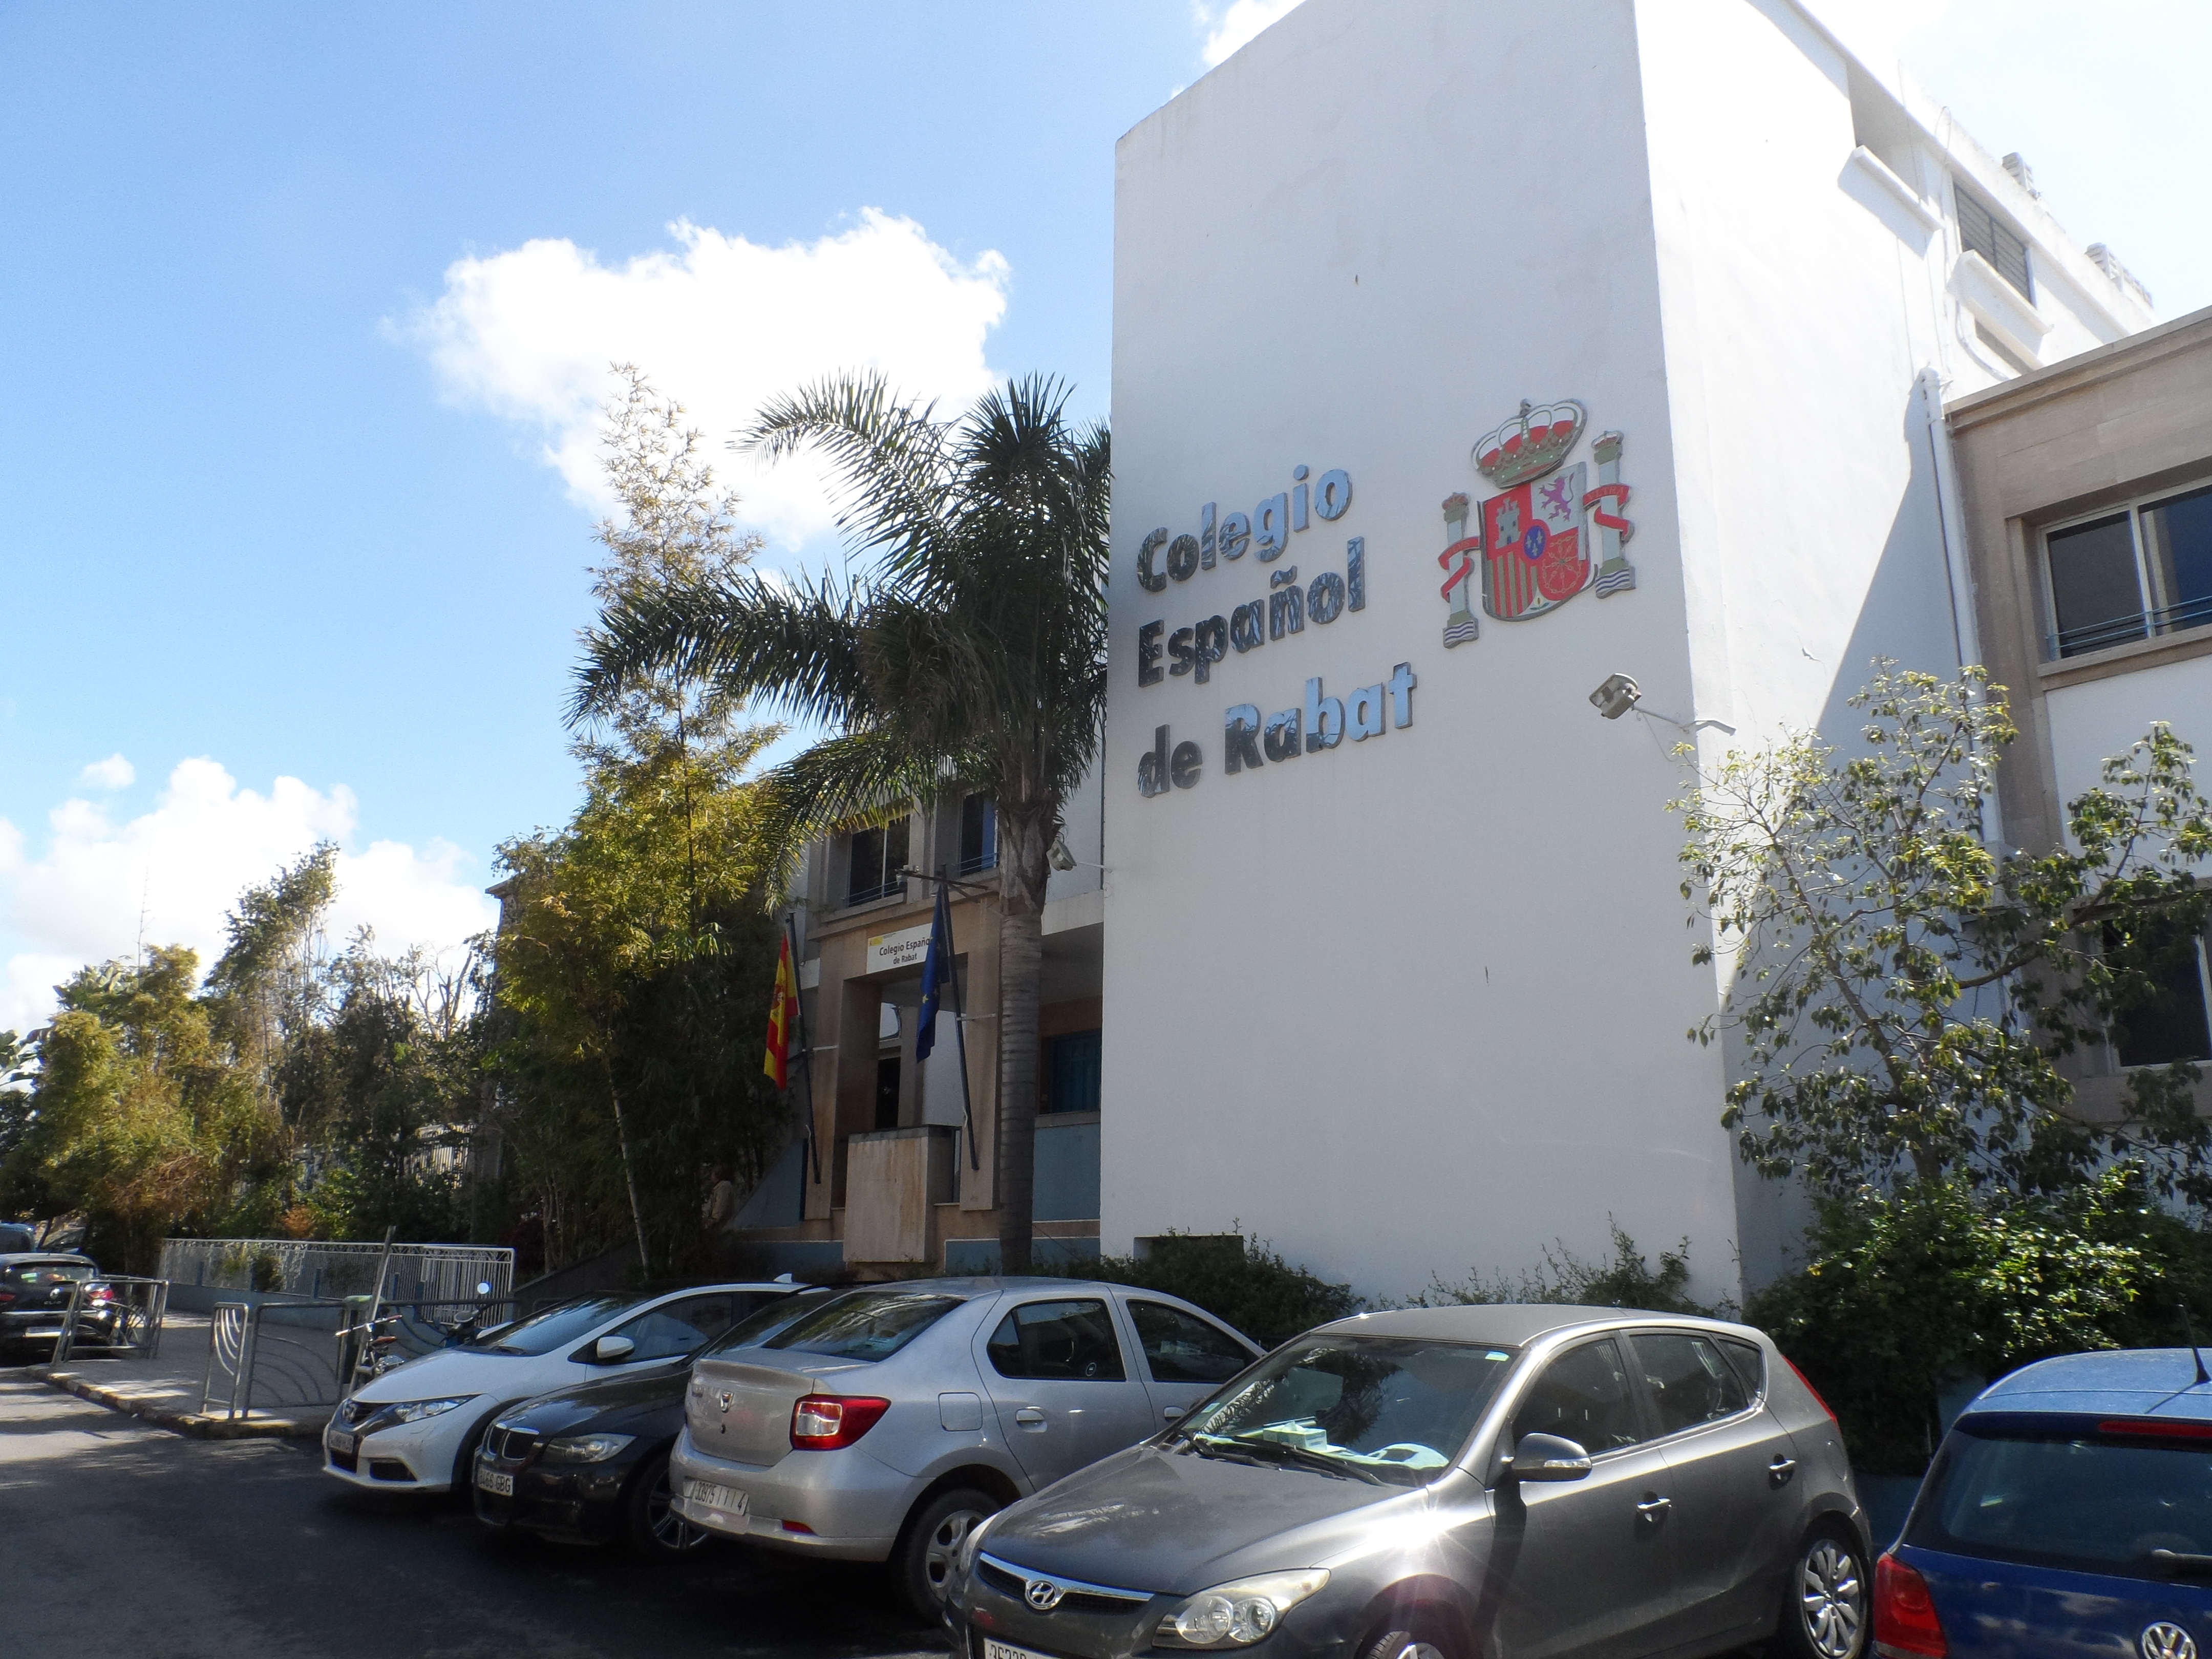 Colegio Español de Rabat